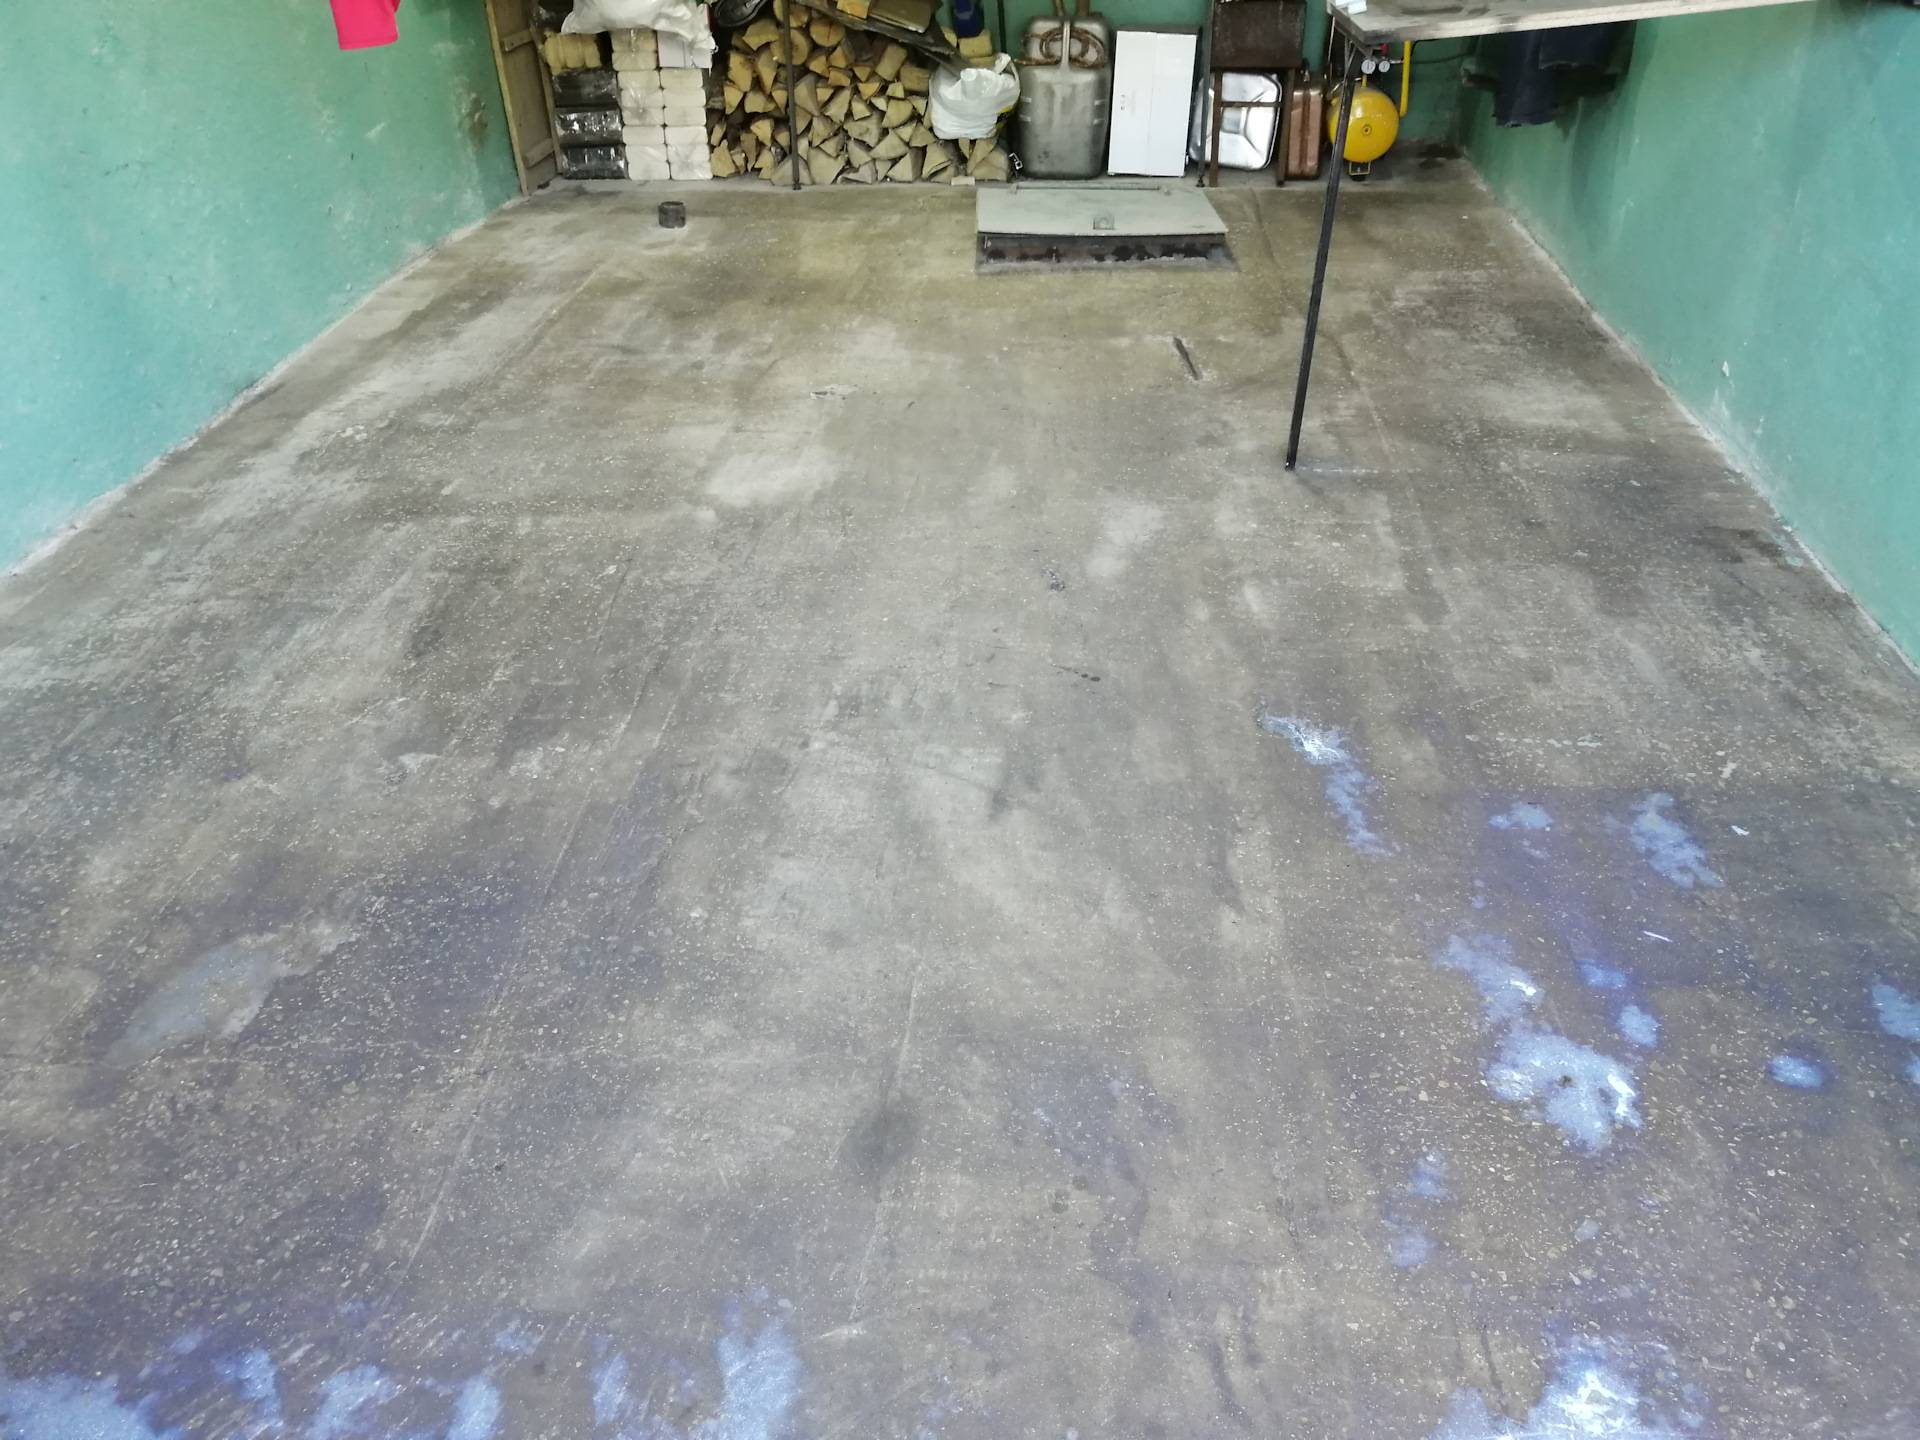 Пол в гараже - варианты покрытия своими руками, чем можно залить кроме бетона